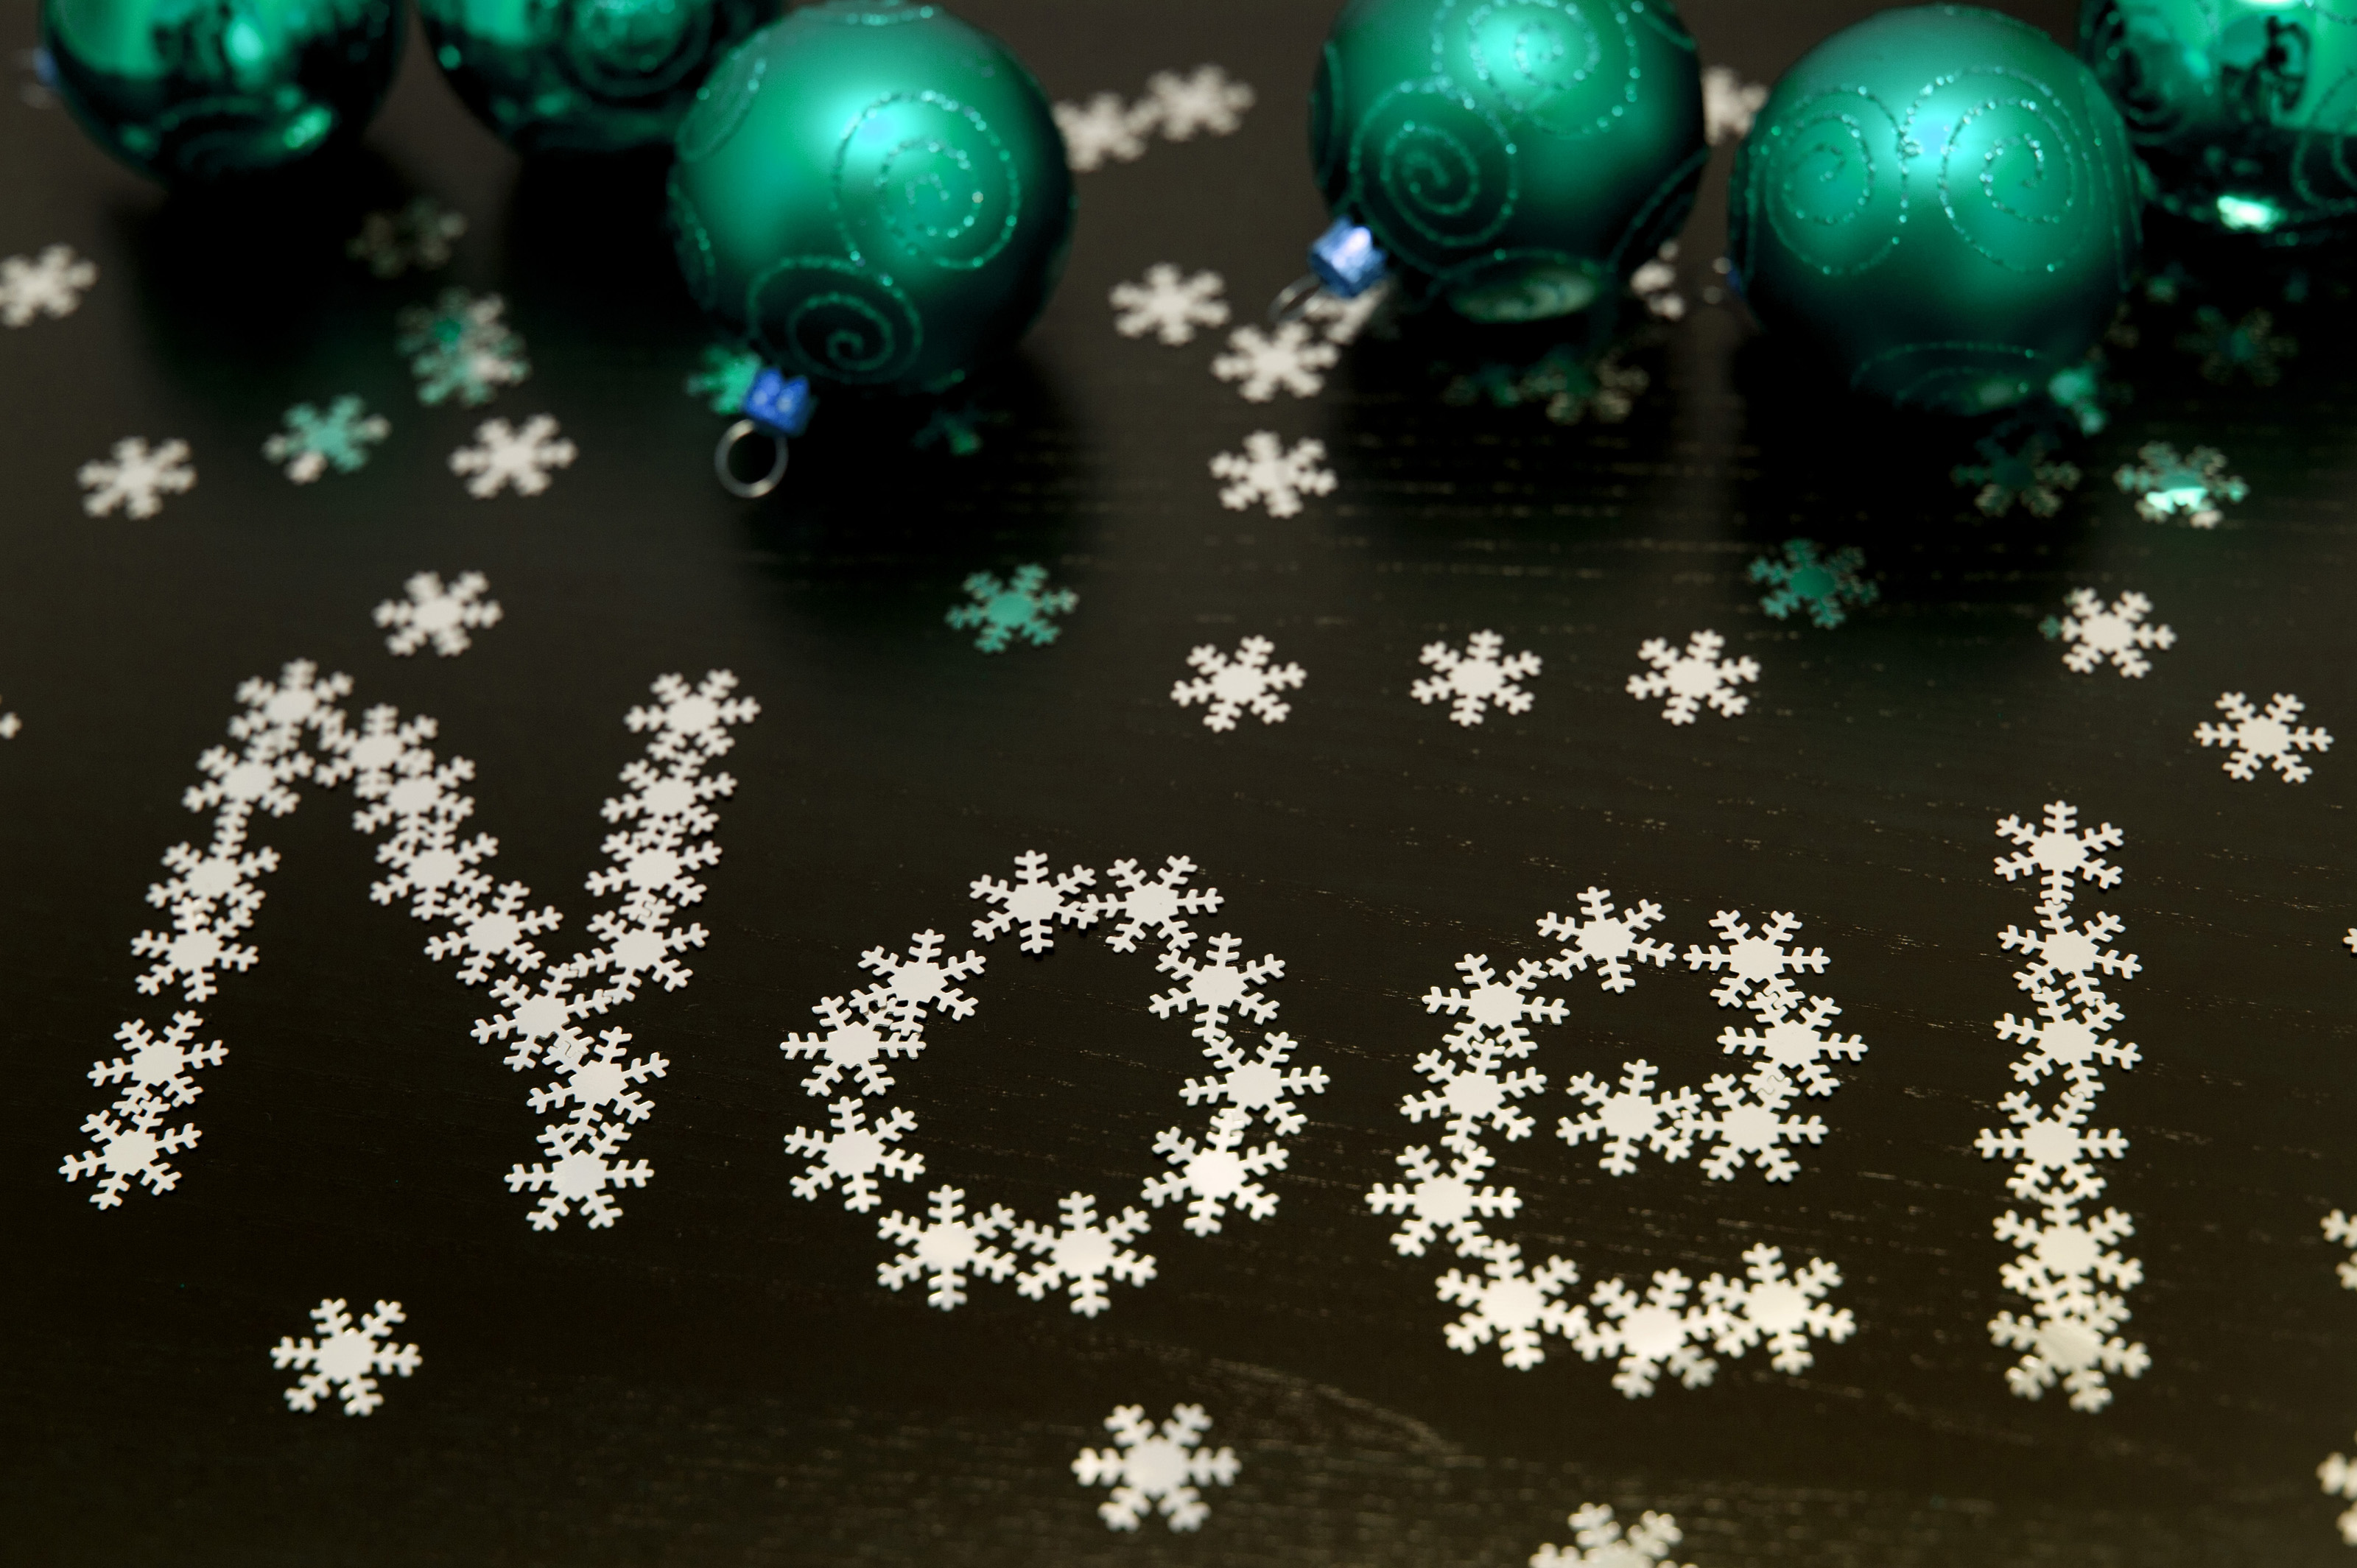 Thiết kế lấy cảm hứng từ tuyết và chữ Noel sẽ mang đến cho bạn một chiếc thiệp Giáng Sinh đầy ấn tượng và đẹp mắt. Nhấp vào hình ảnh để khám phá những mẫu thiệp tuyệt vời cho mùa Giáng Sinh này.